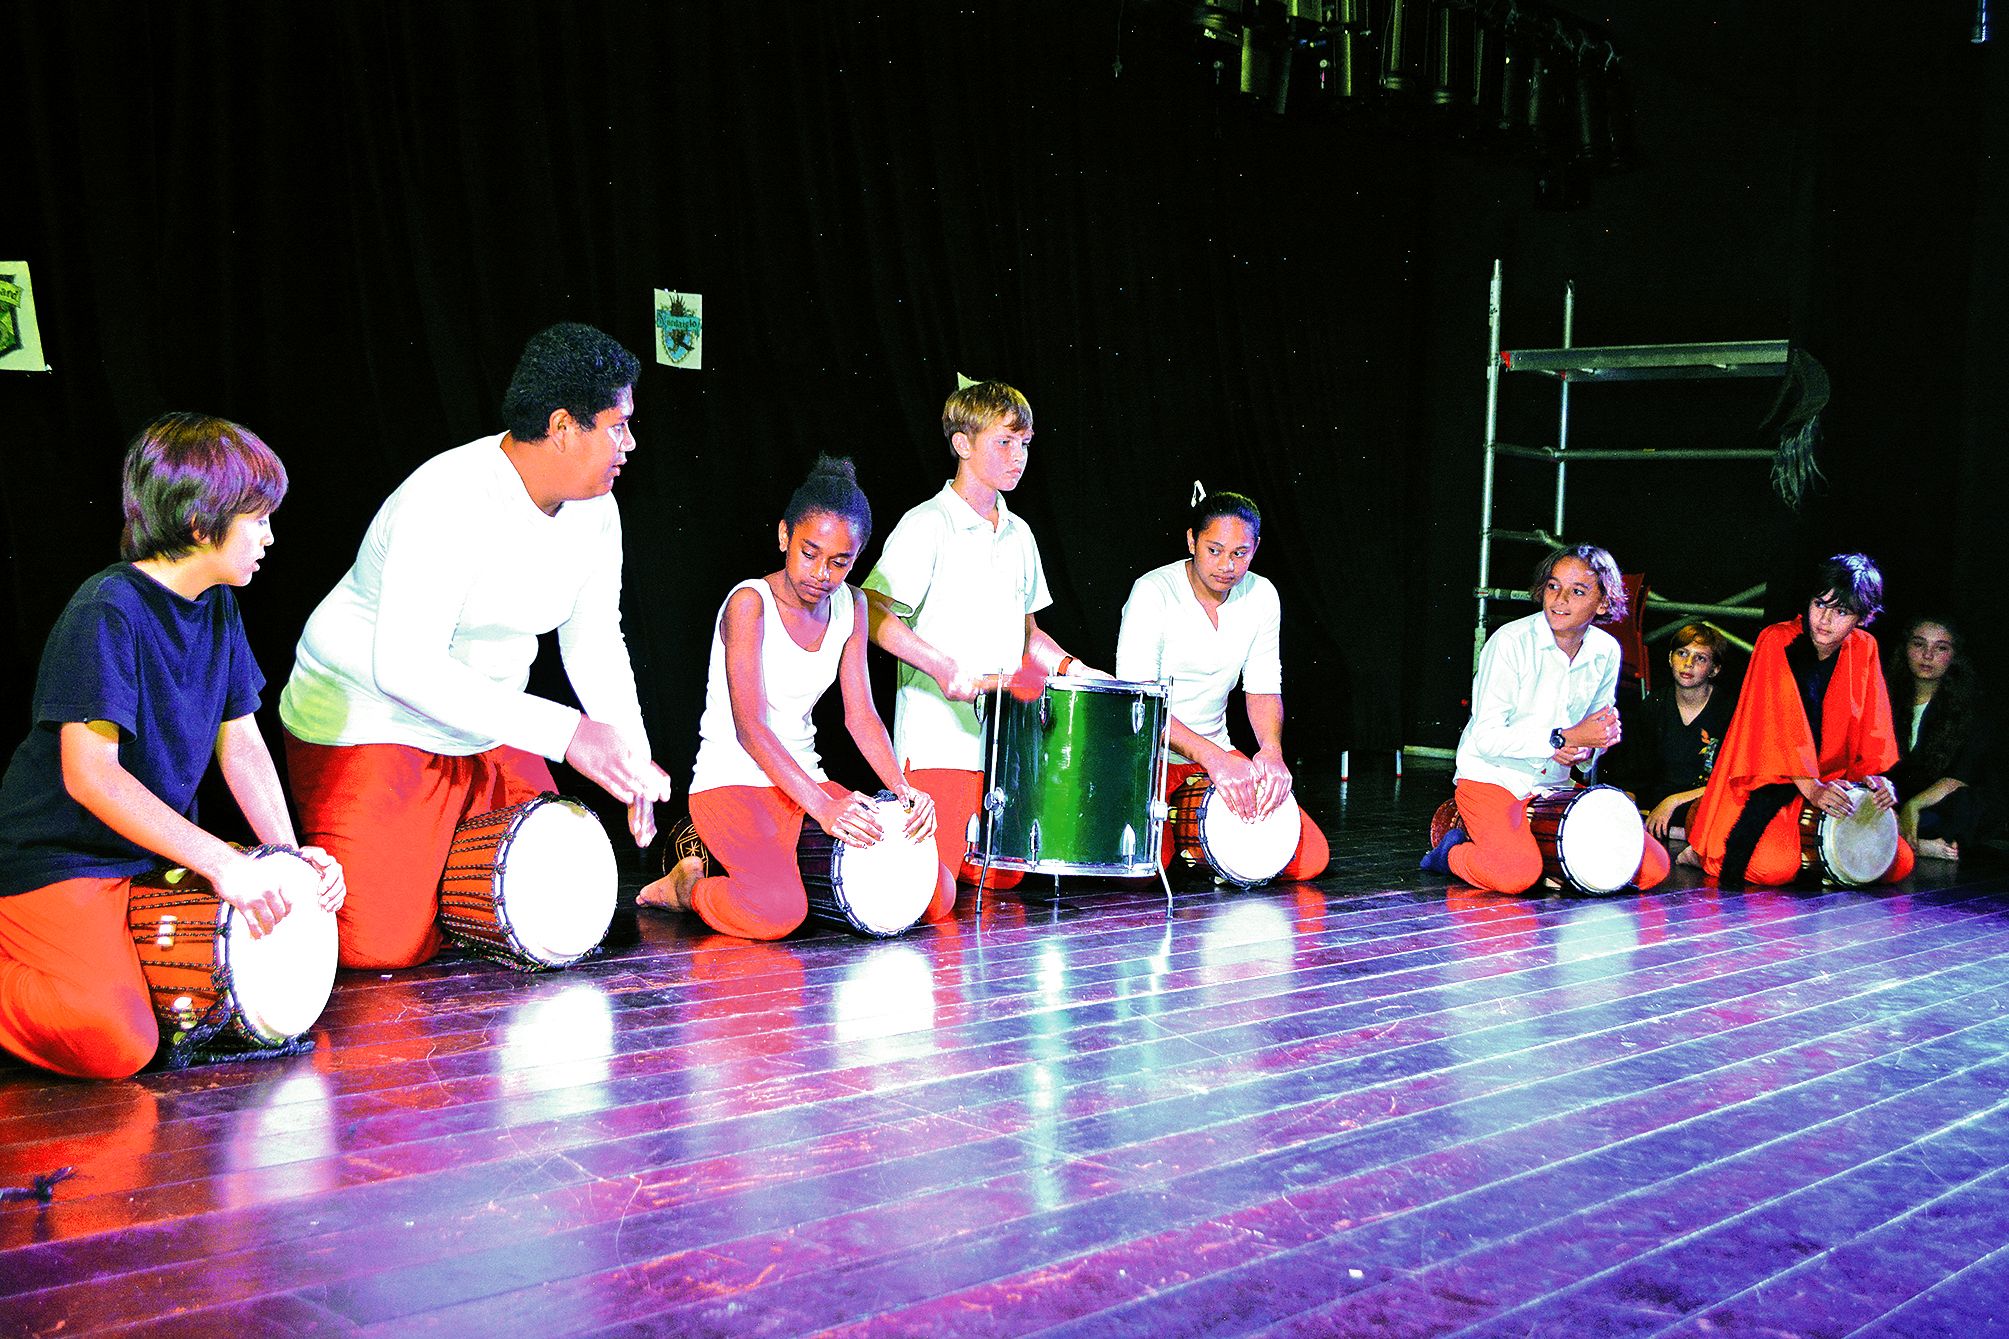 La prestation des joueurs de djembé  et autres tambours n’est pas passée inaperçue. Les élèves ont donné le meilleur d’eux-mêmes pour assurer cette partie  du spectacle.